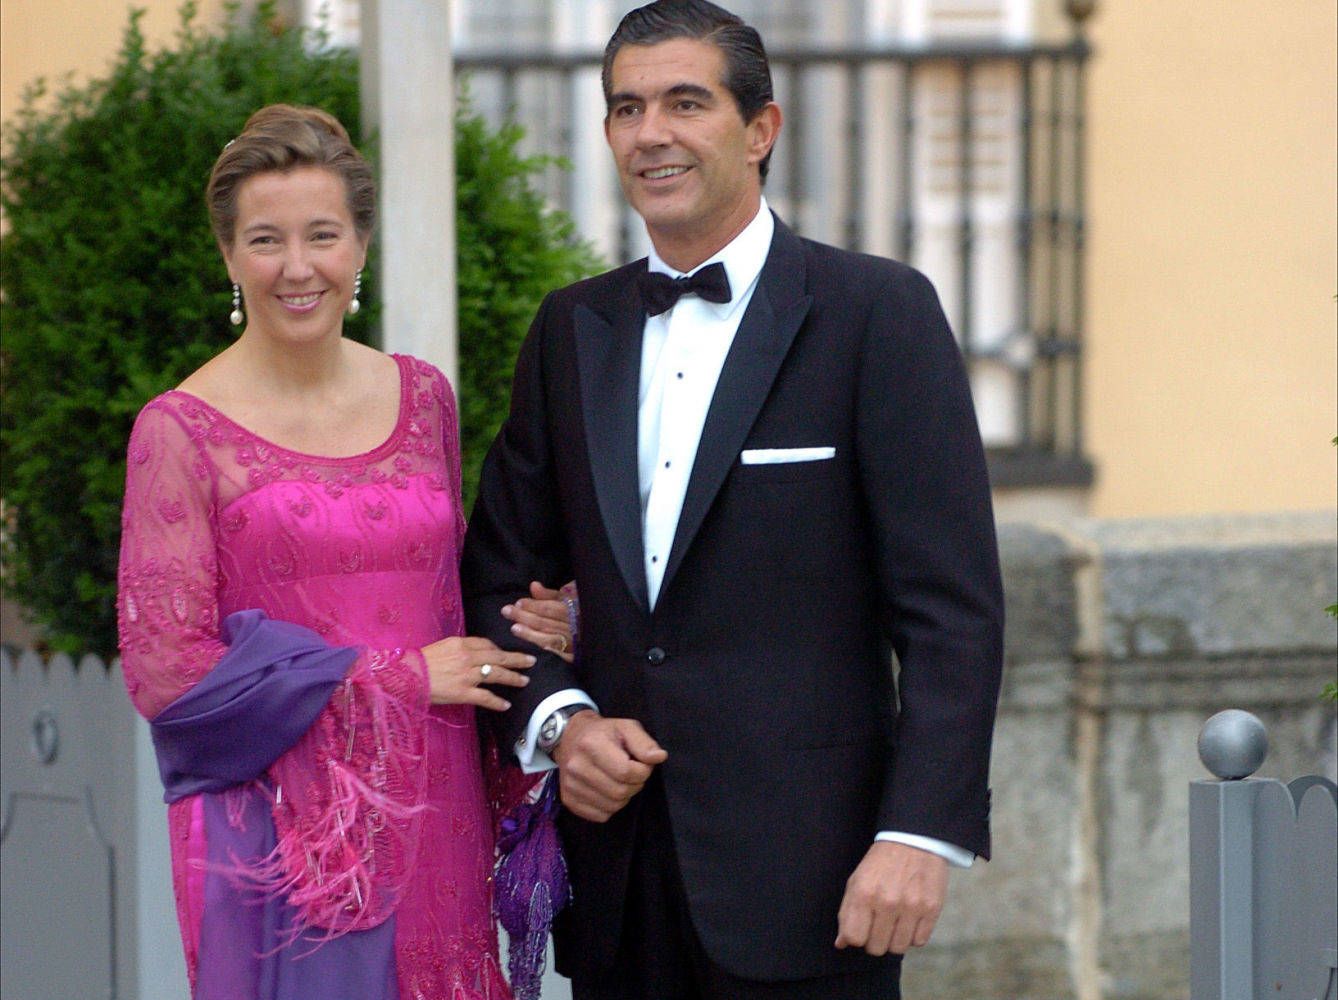 El matrimonio en la boda real de Don Felipe y Doña Letizia (Gtres)